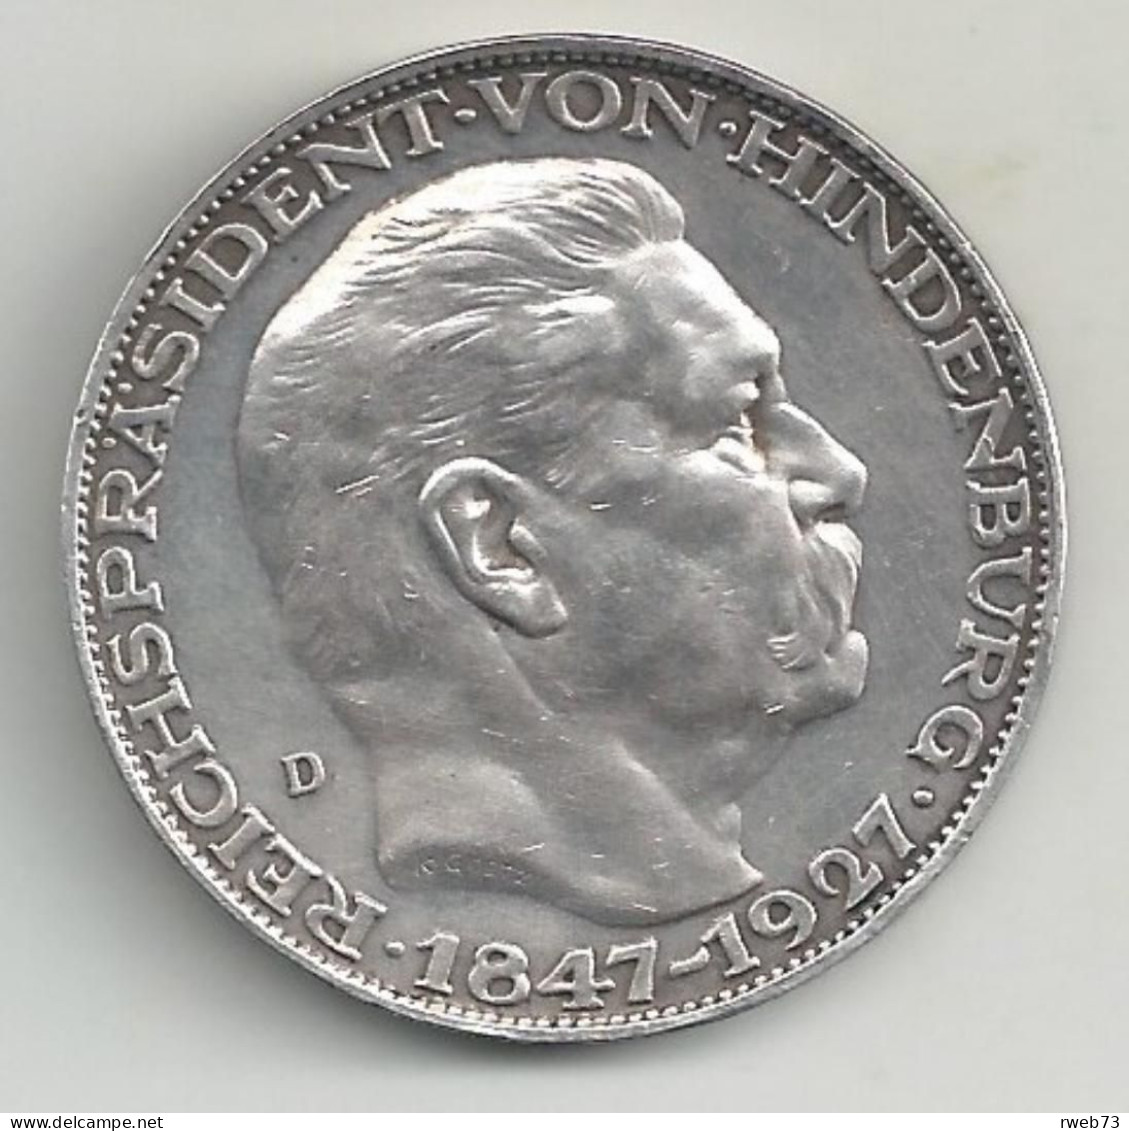 ALLEMAGNE - Médaille 80 Ans HINDENBURG - 1927- Argent - TTB/SUP - Médailles